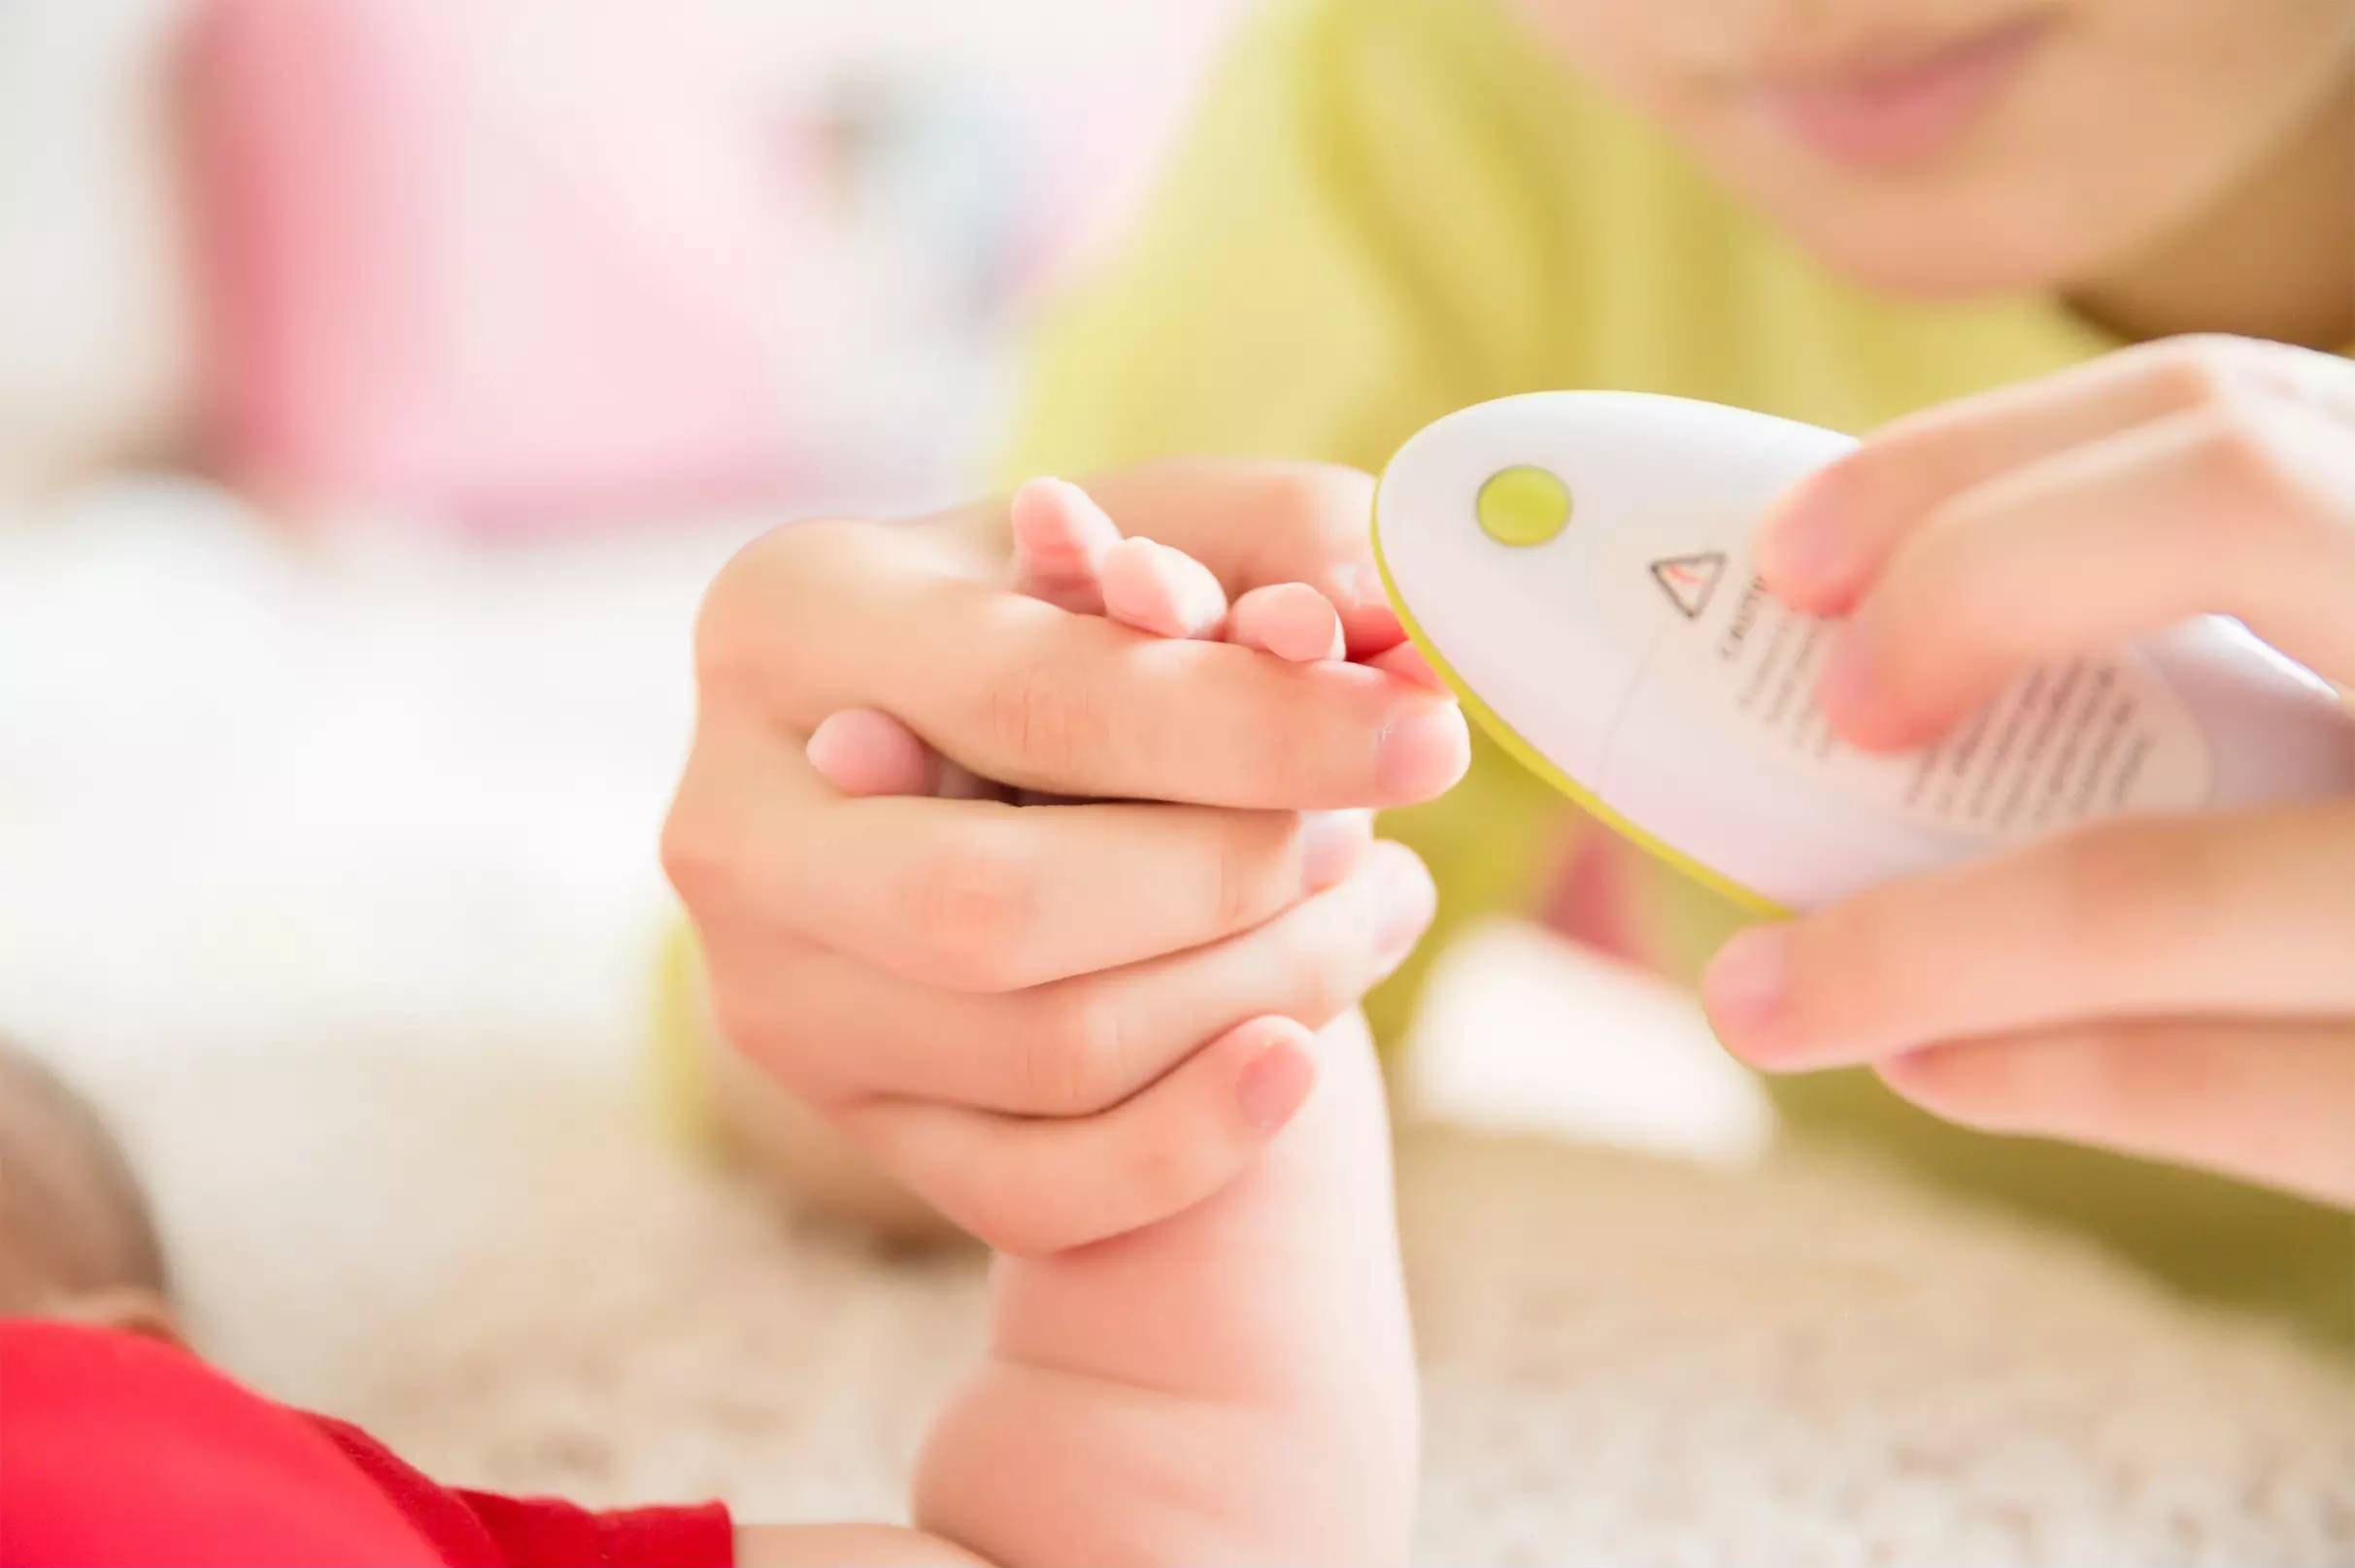 帮新妈妈解难题之一:如何给婴儿剪指甲?